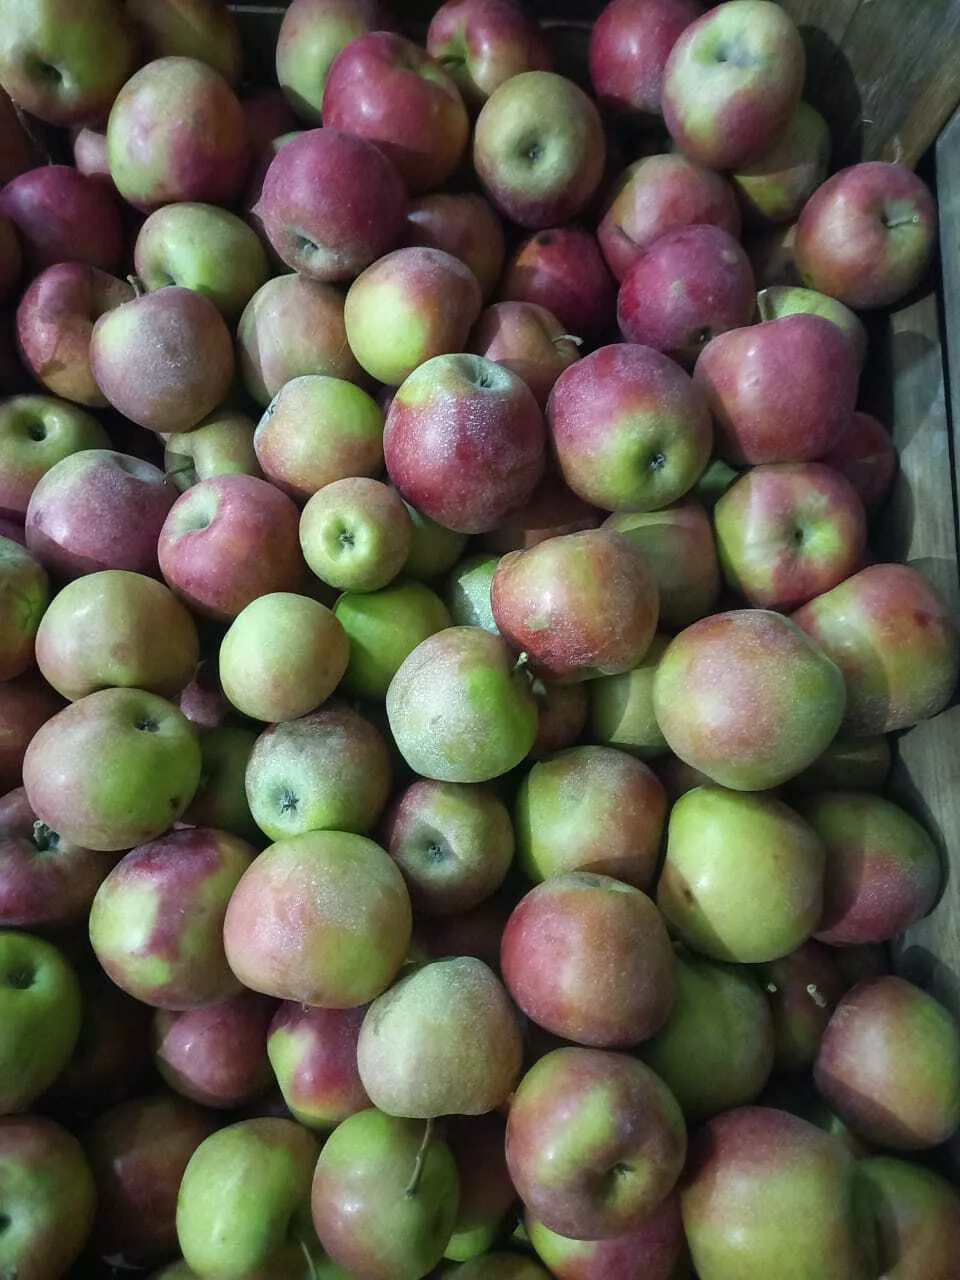 яблоки Джонаголд 1+2сорт калибр 65+ опт в Краснодаре и Краснодарском крае 3